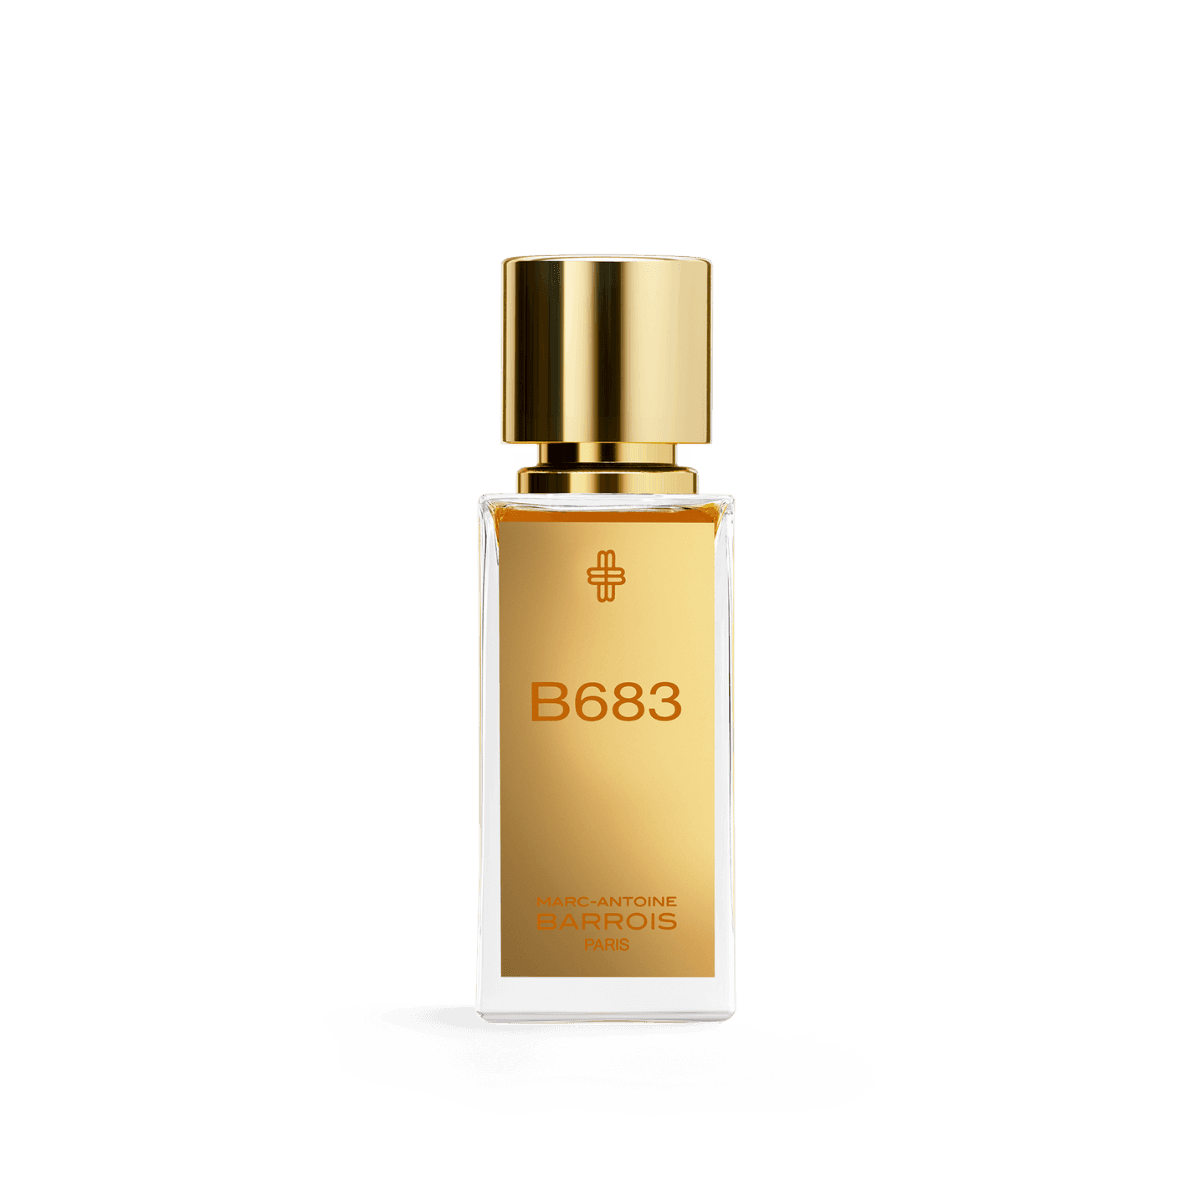 Afbeelding van B683 eau de parfum 30 ml van het merk Marc-Antoine Barrois